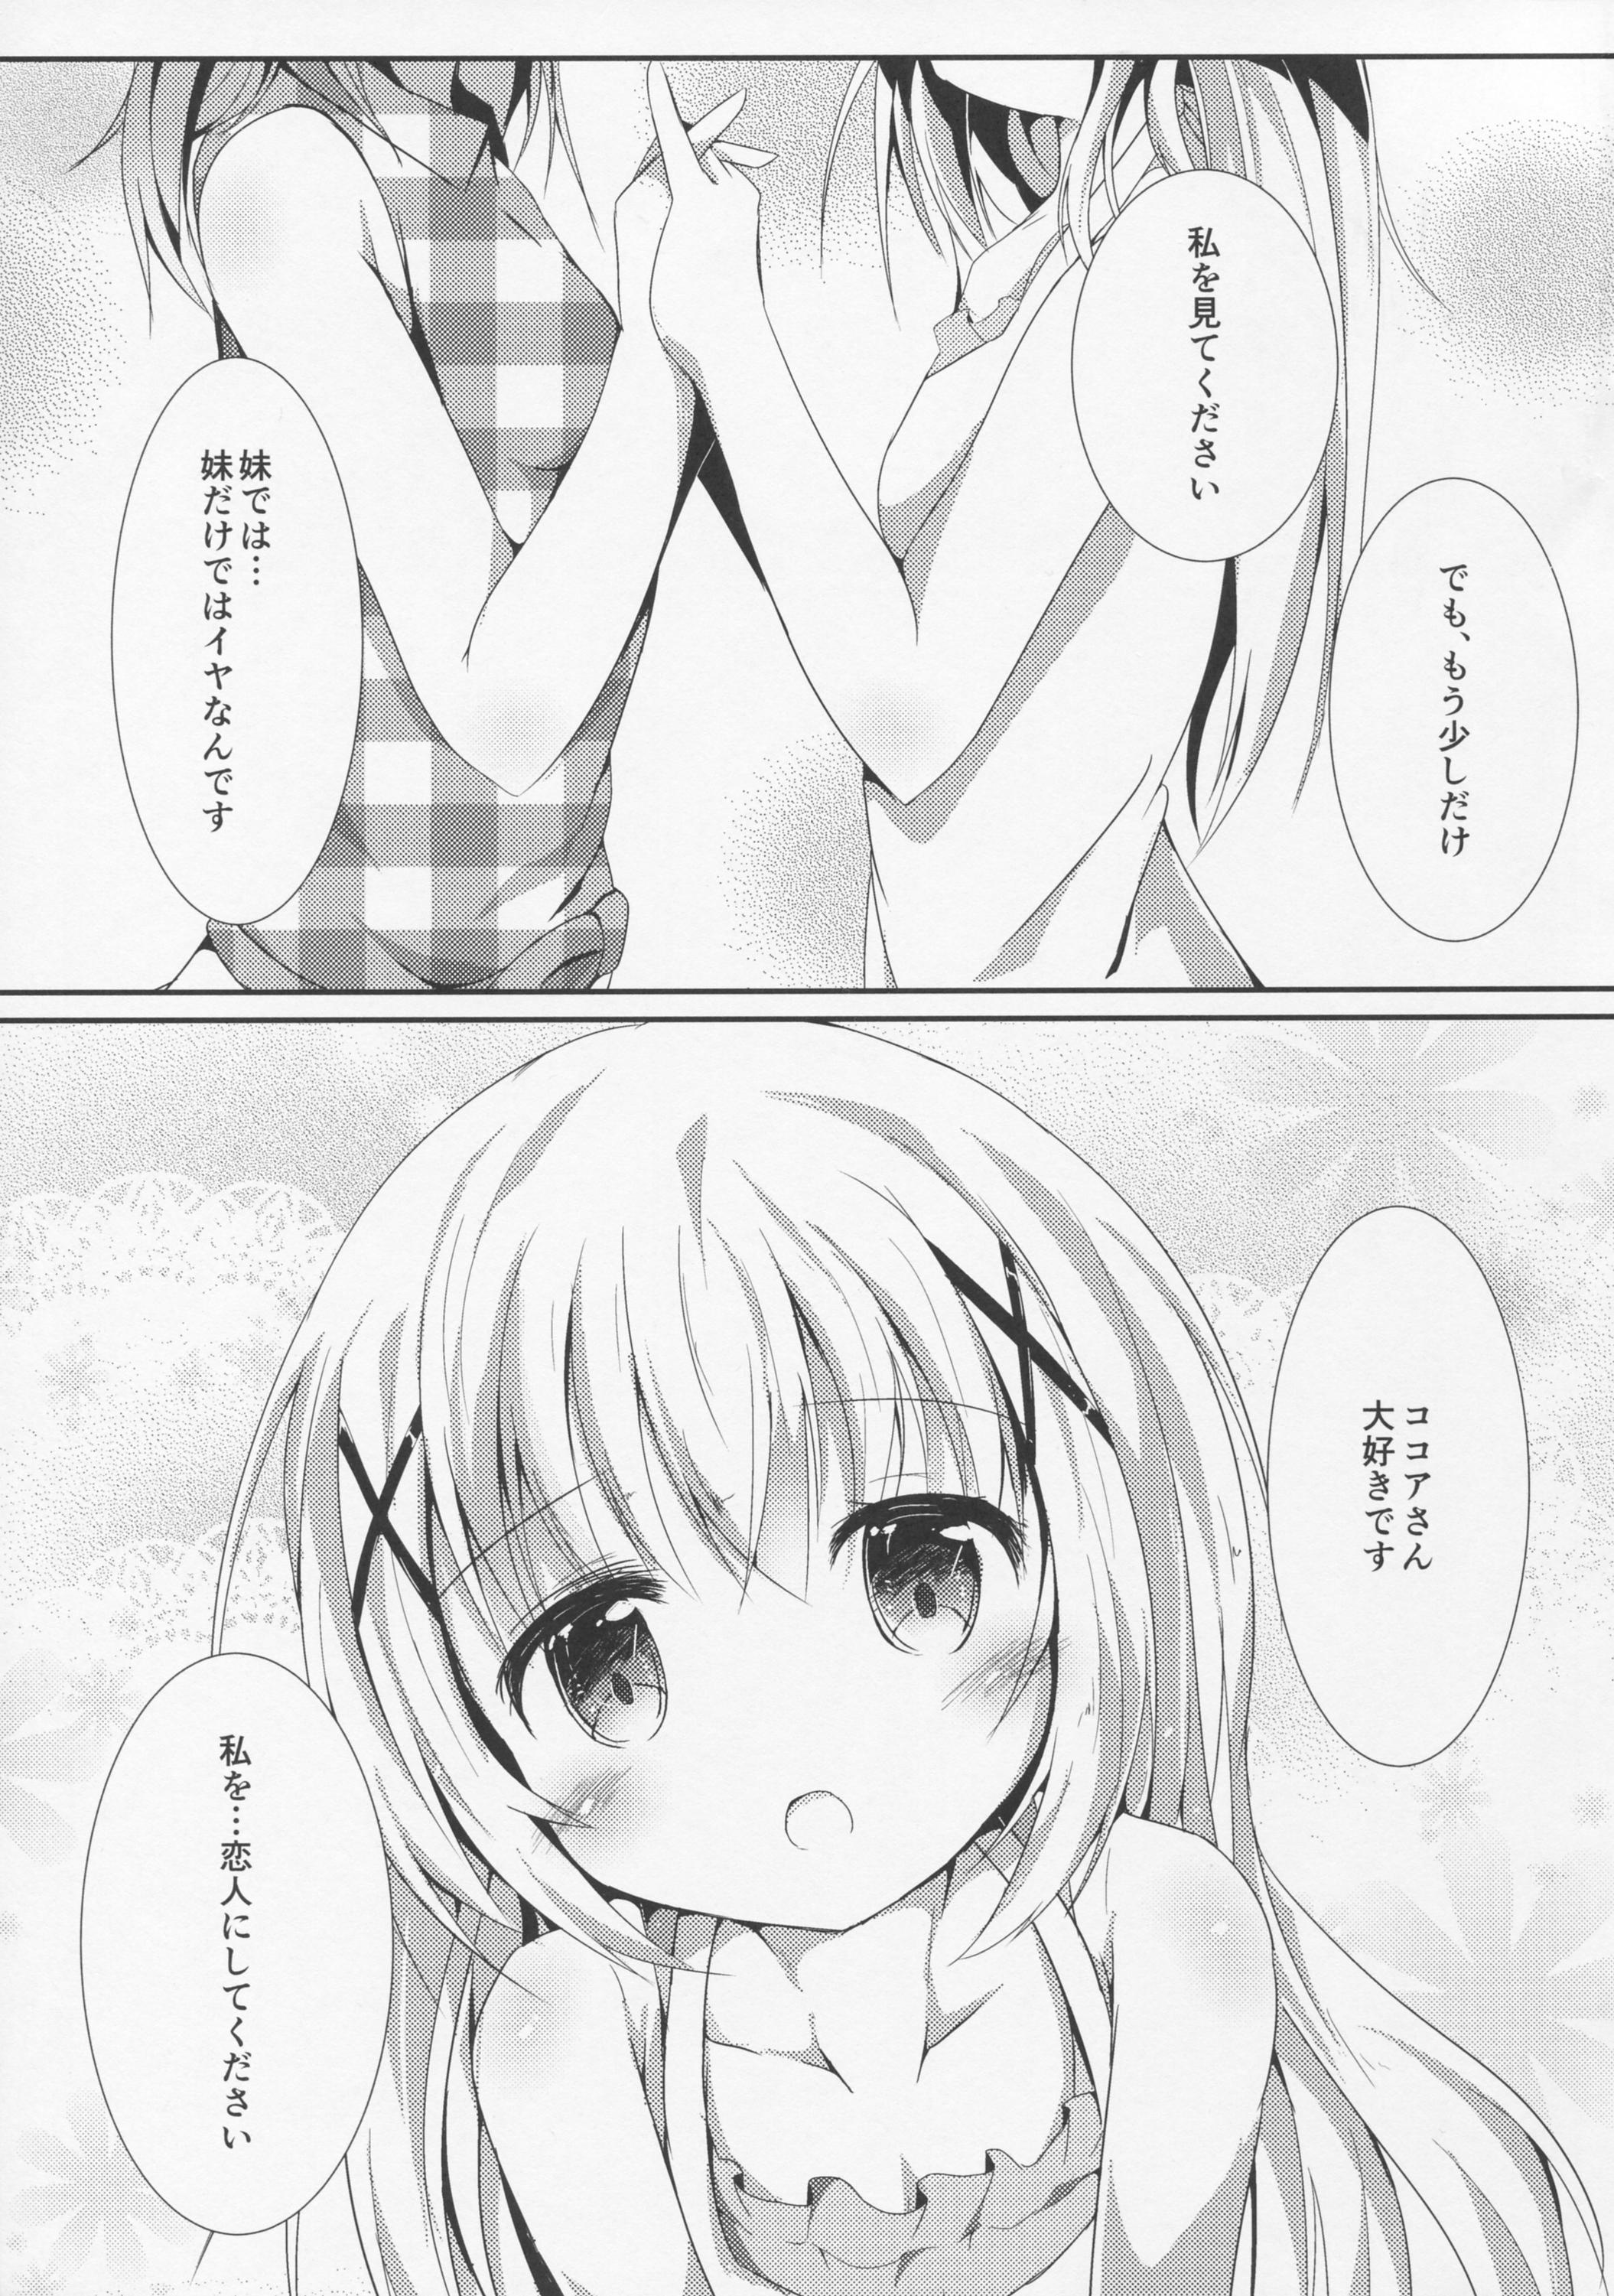 Petite Teenager Sister or Not Sister?? - Gochuumon wa usagi desu ka Family Roleplay - Page 6